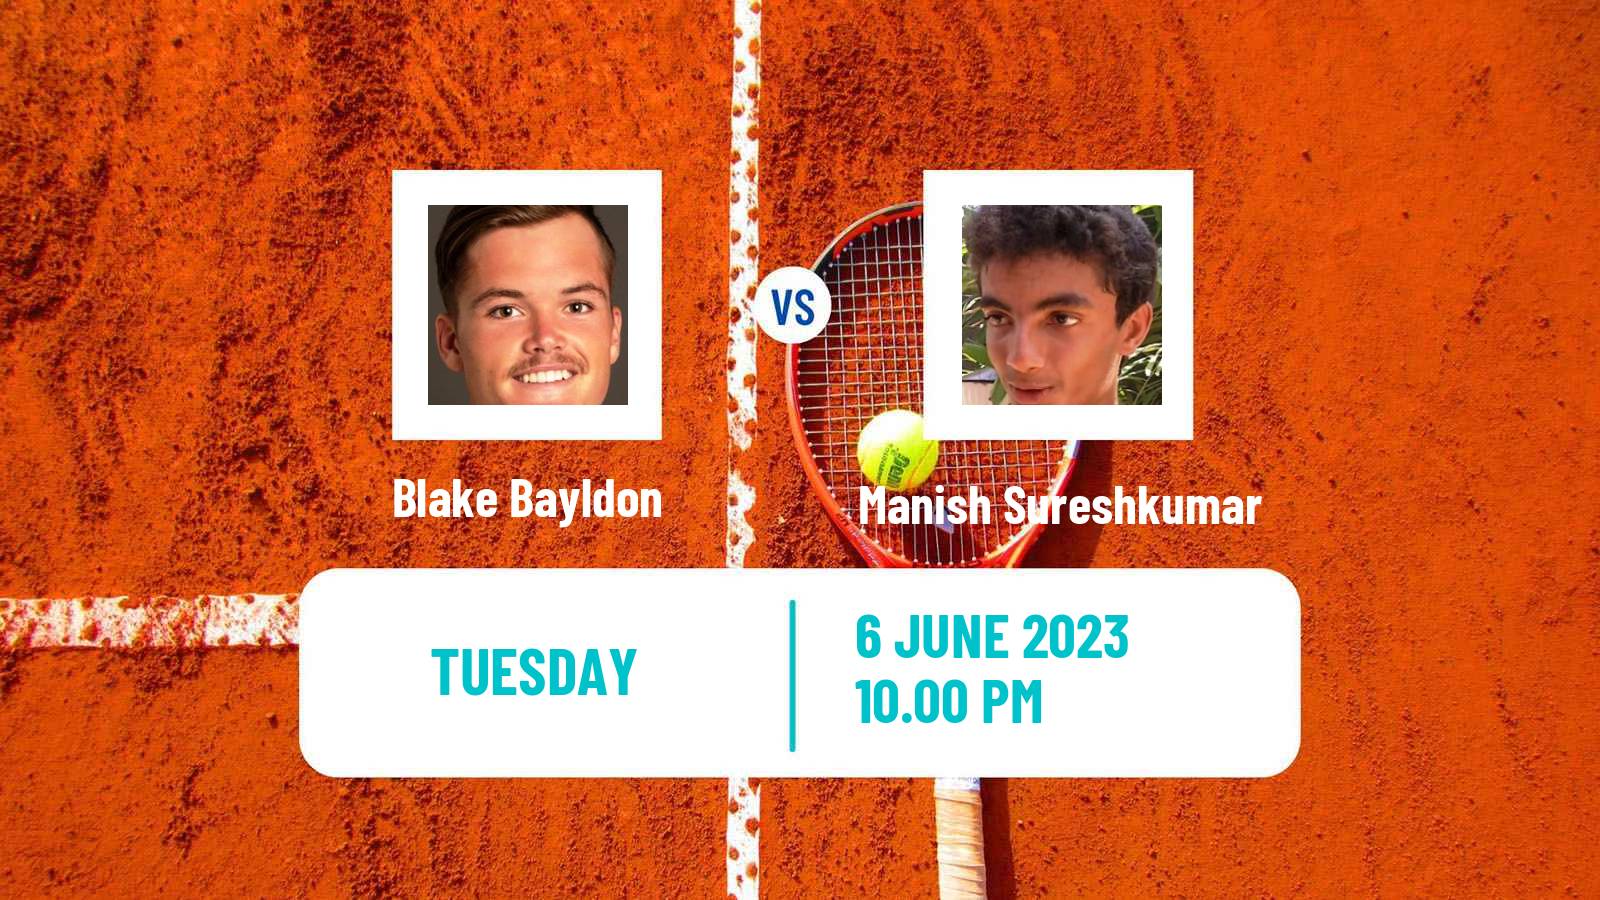 Tennis ITF M15 Nakhon Si Thammarat 2 Men Blake Bayldon - Manish Sureshkumar